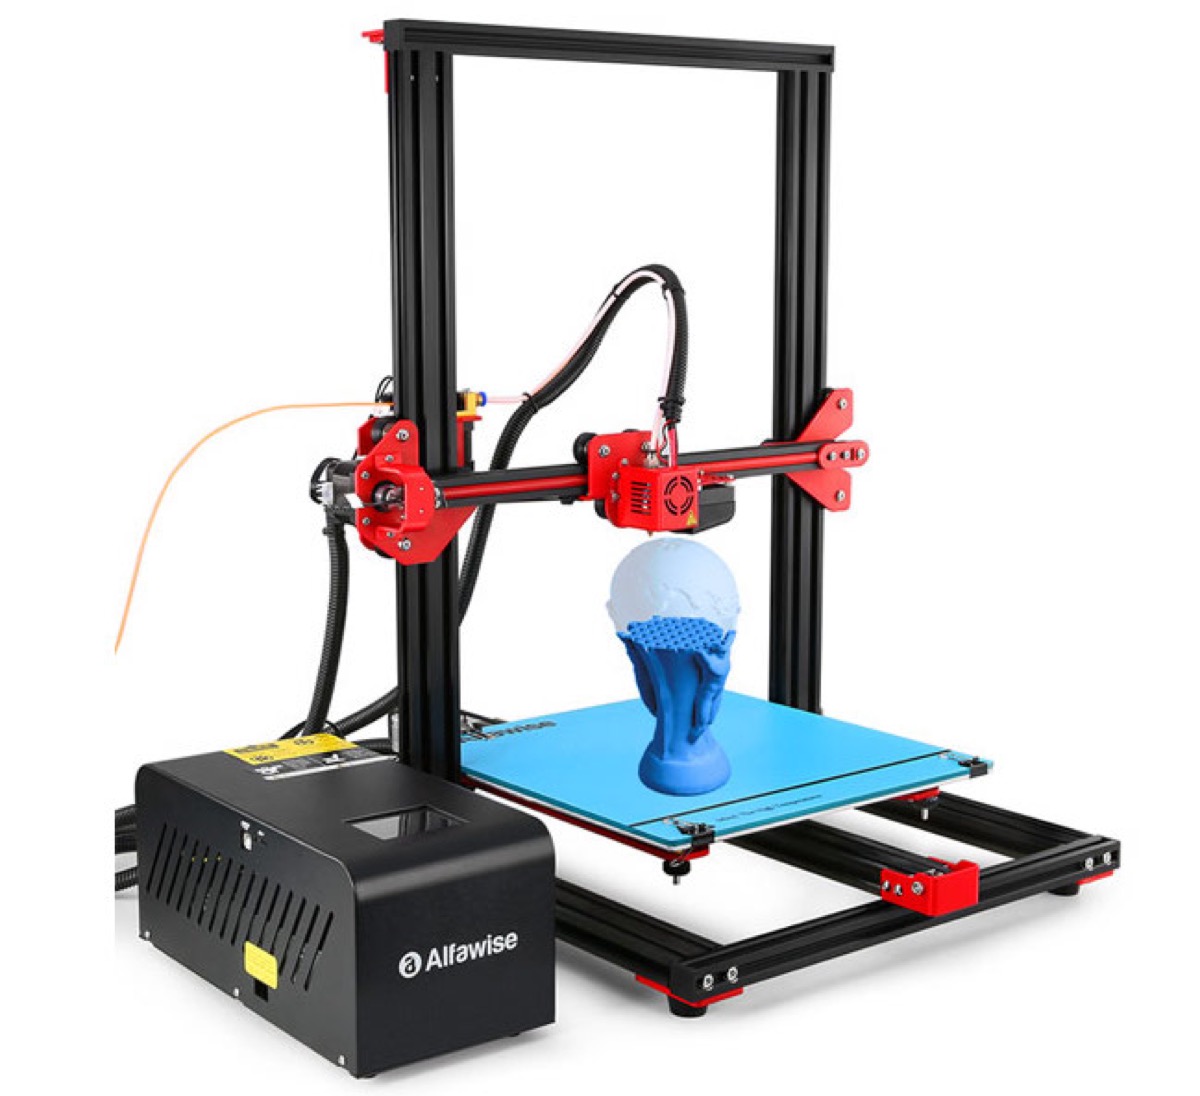 Alfawise U20, la stampante 3D con schermo touch